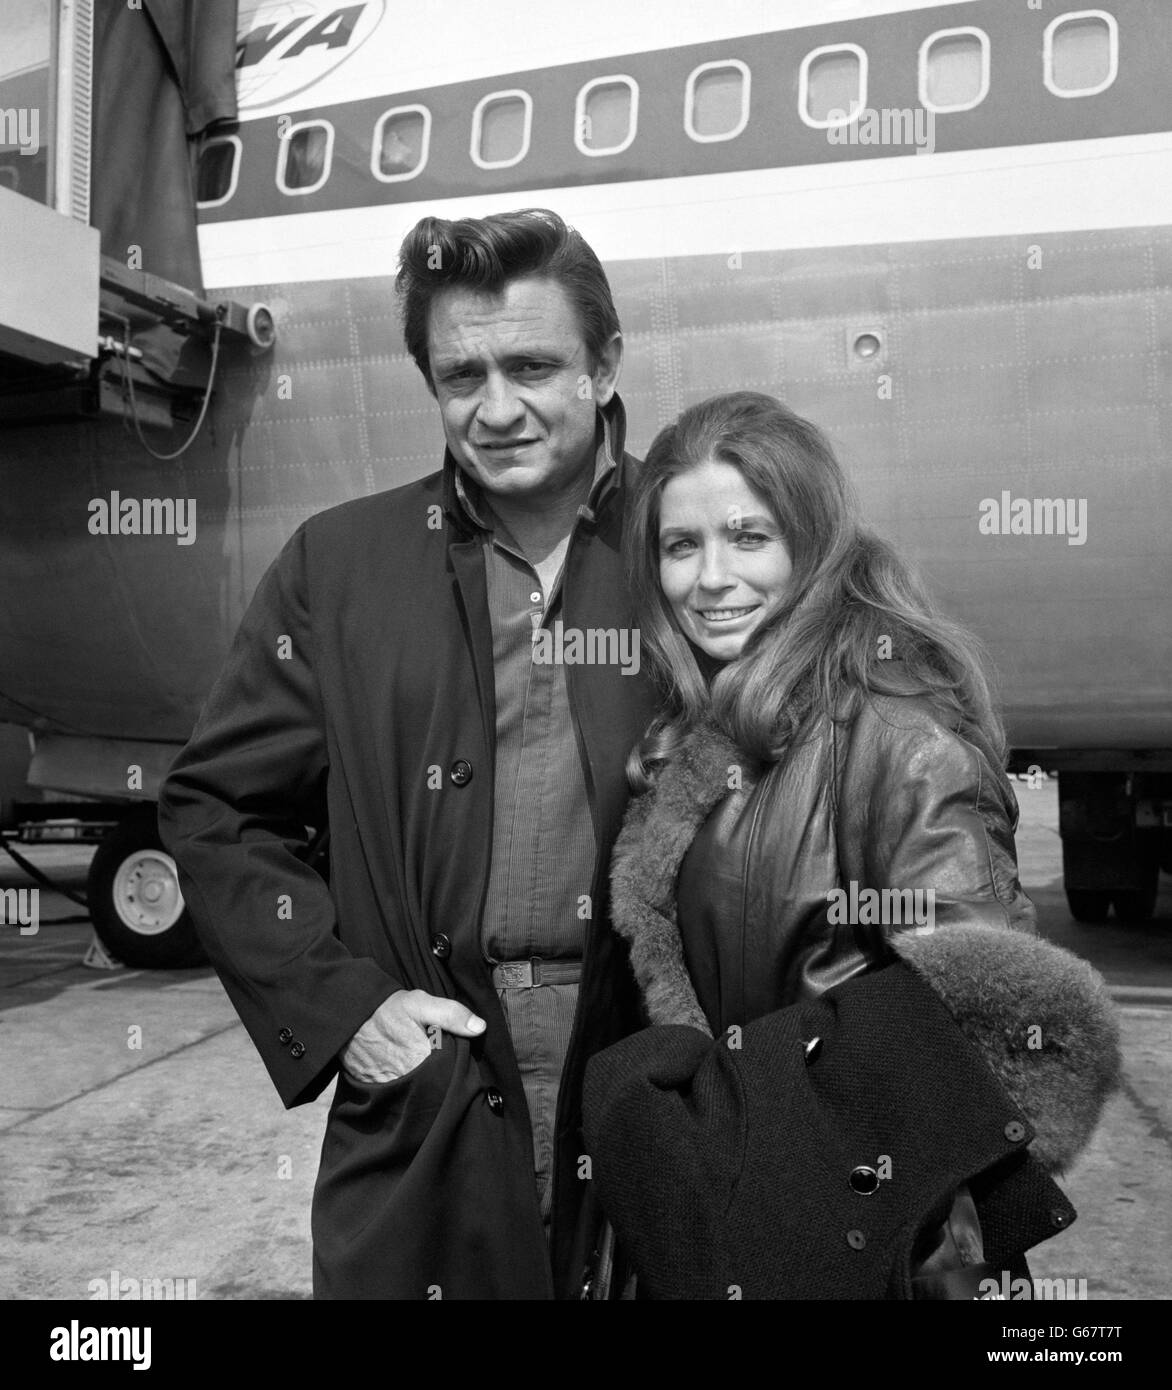 Johnny Cash, der amerikanische Country- und Western-Sänger, im Bild mit seiner Frau June Carter am Flughafen Heathrow in London. Stockfoto